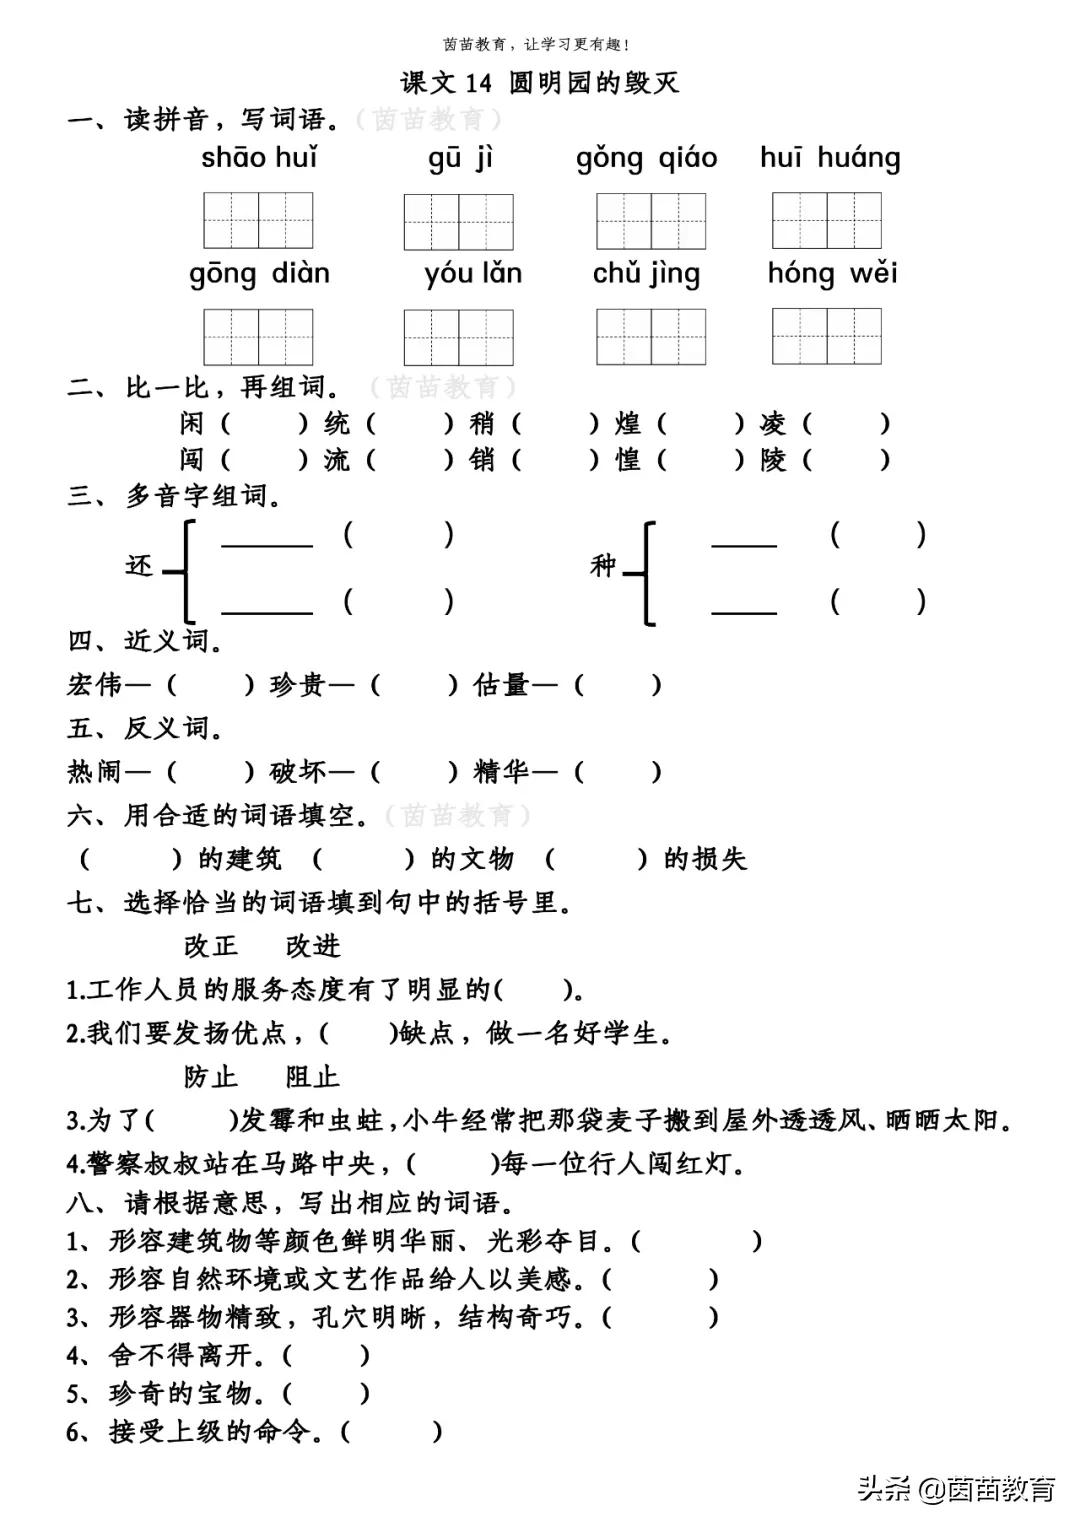 少年中国说拼音版原文（少年中国说完整及解释）